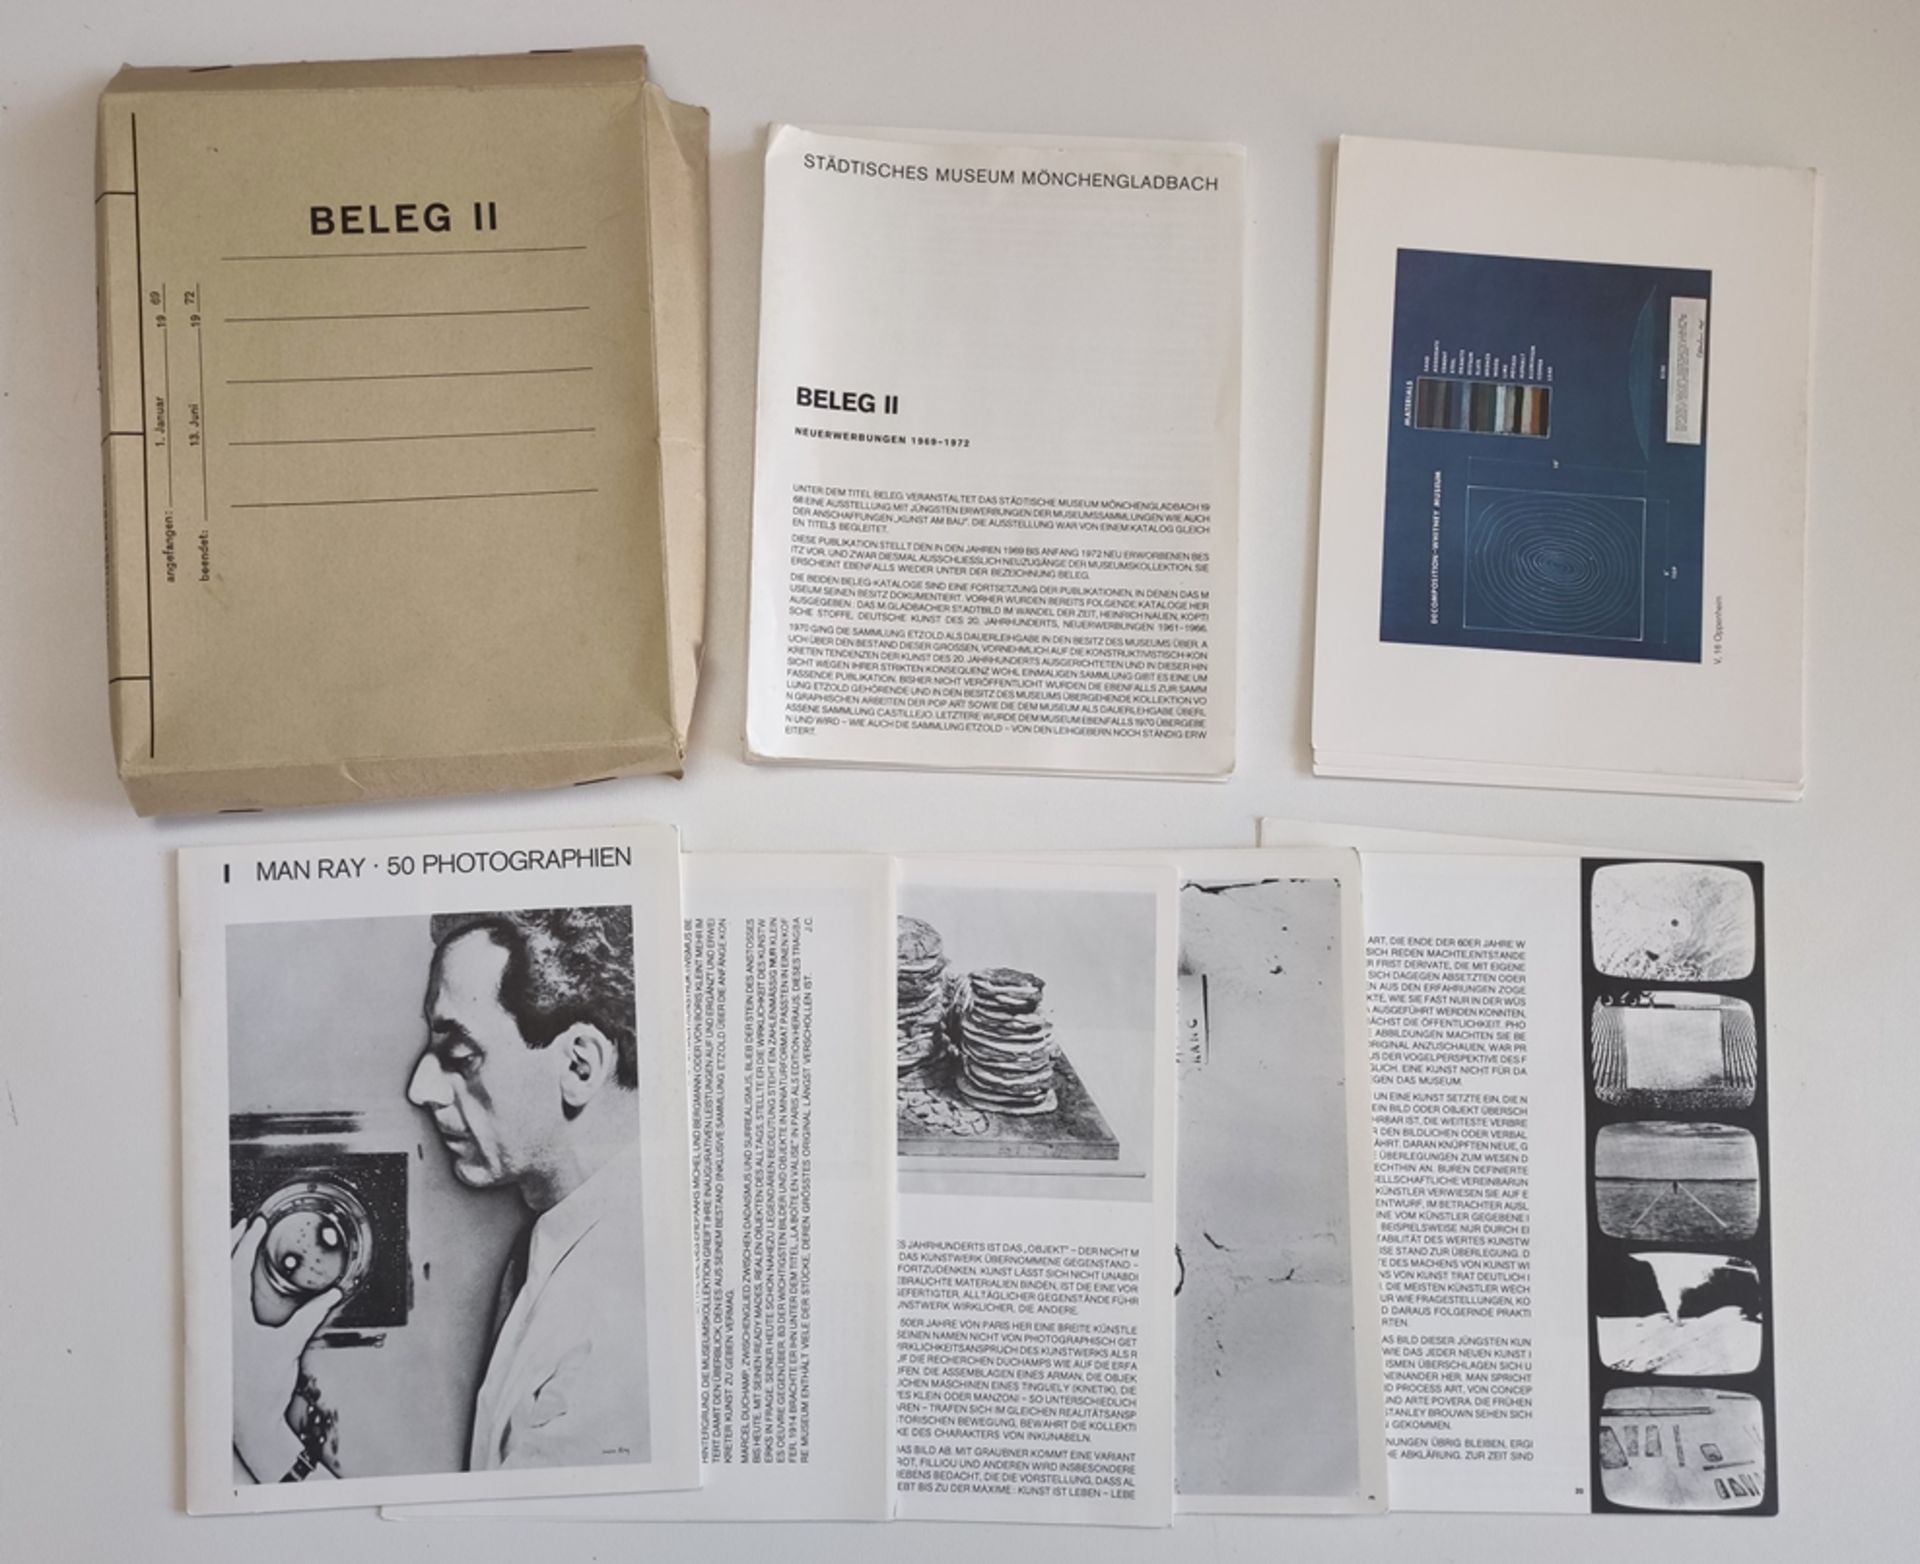 Catalogue of Städtisches Museum Mönchengladbach "Beleg II. Neuerwerbungen 1969-1972", cardboard box